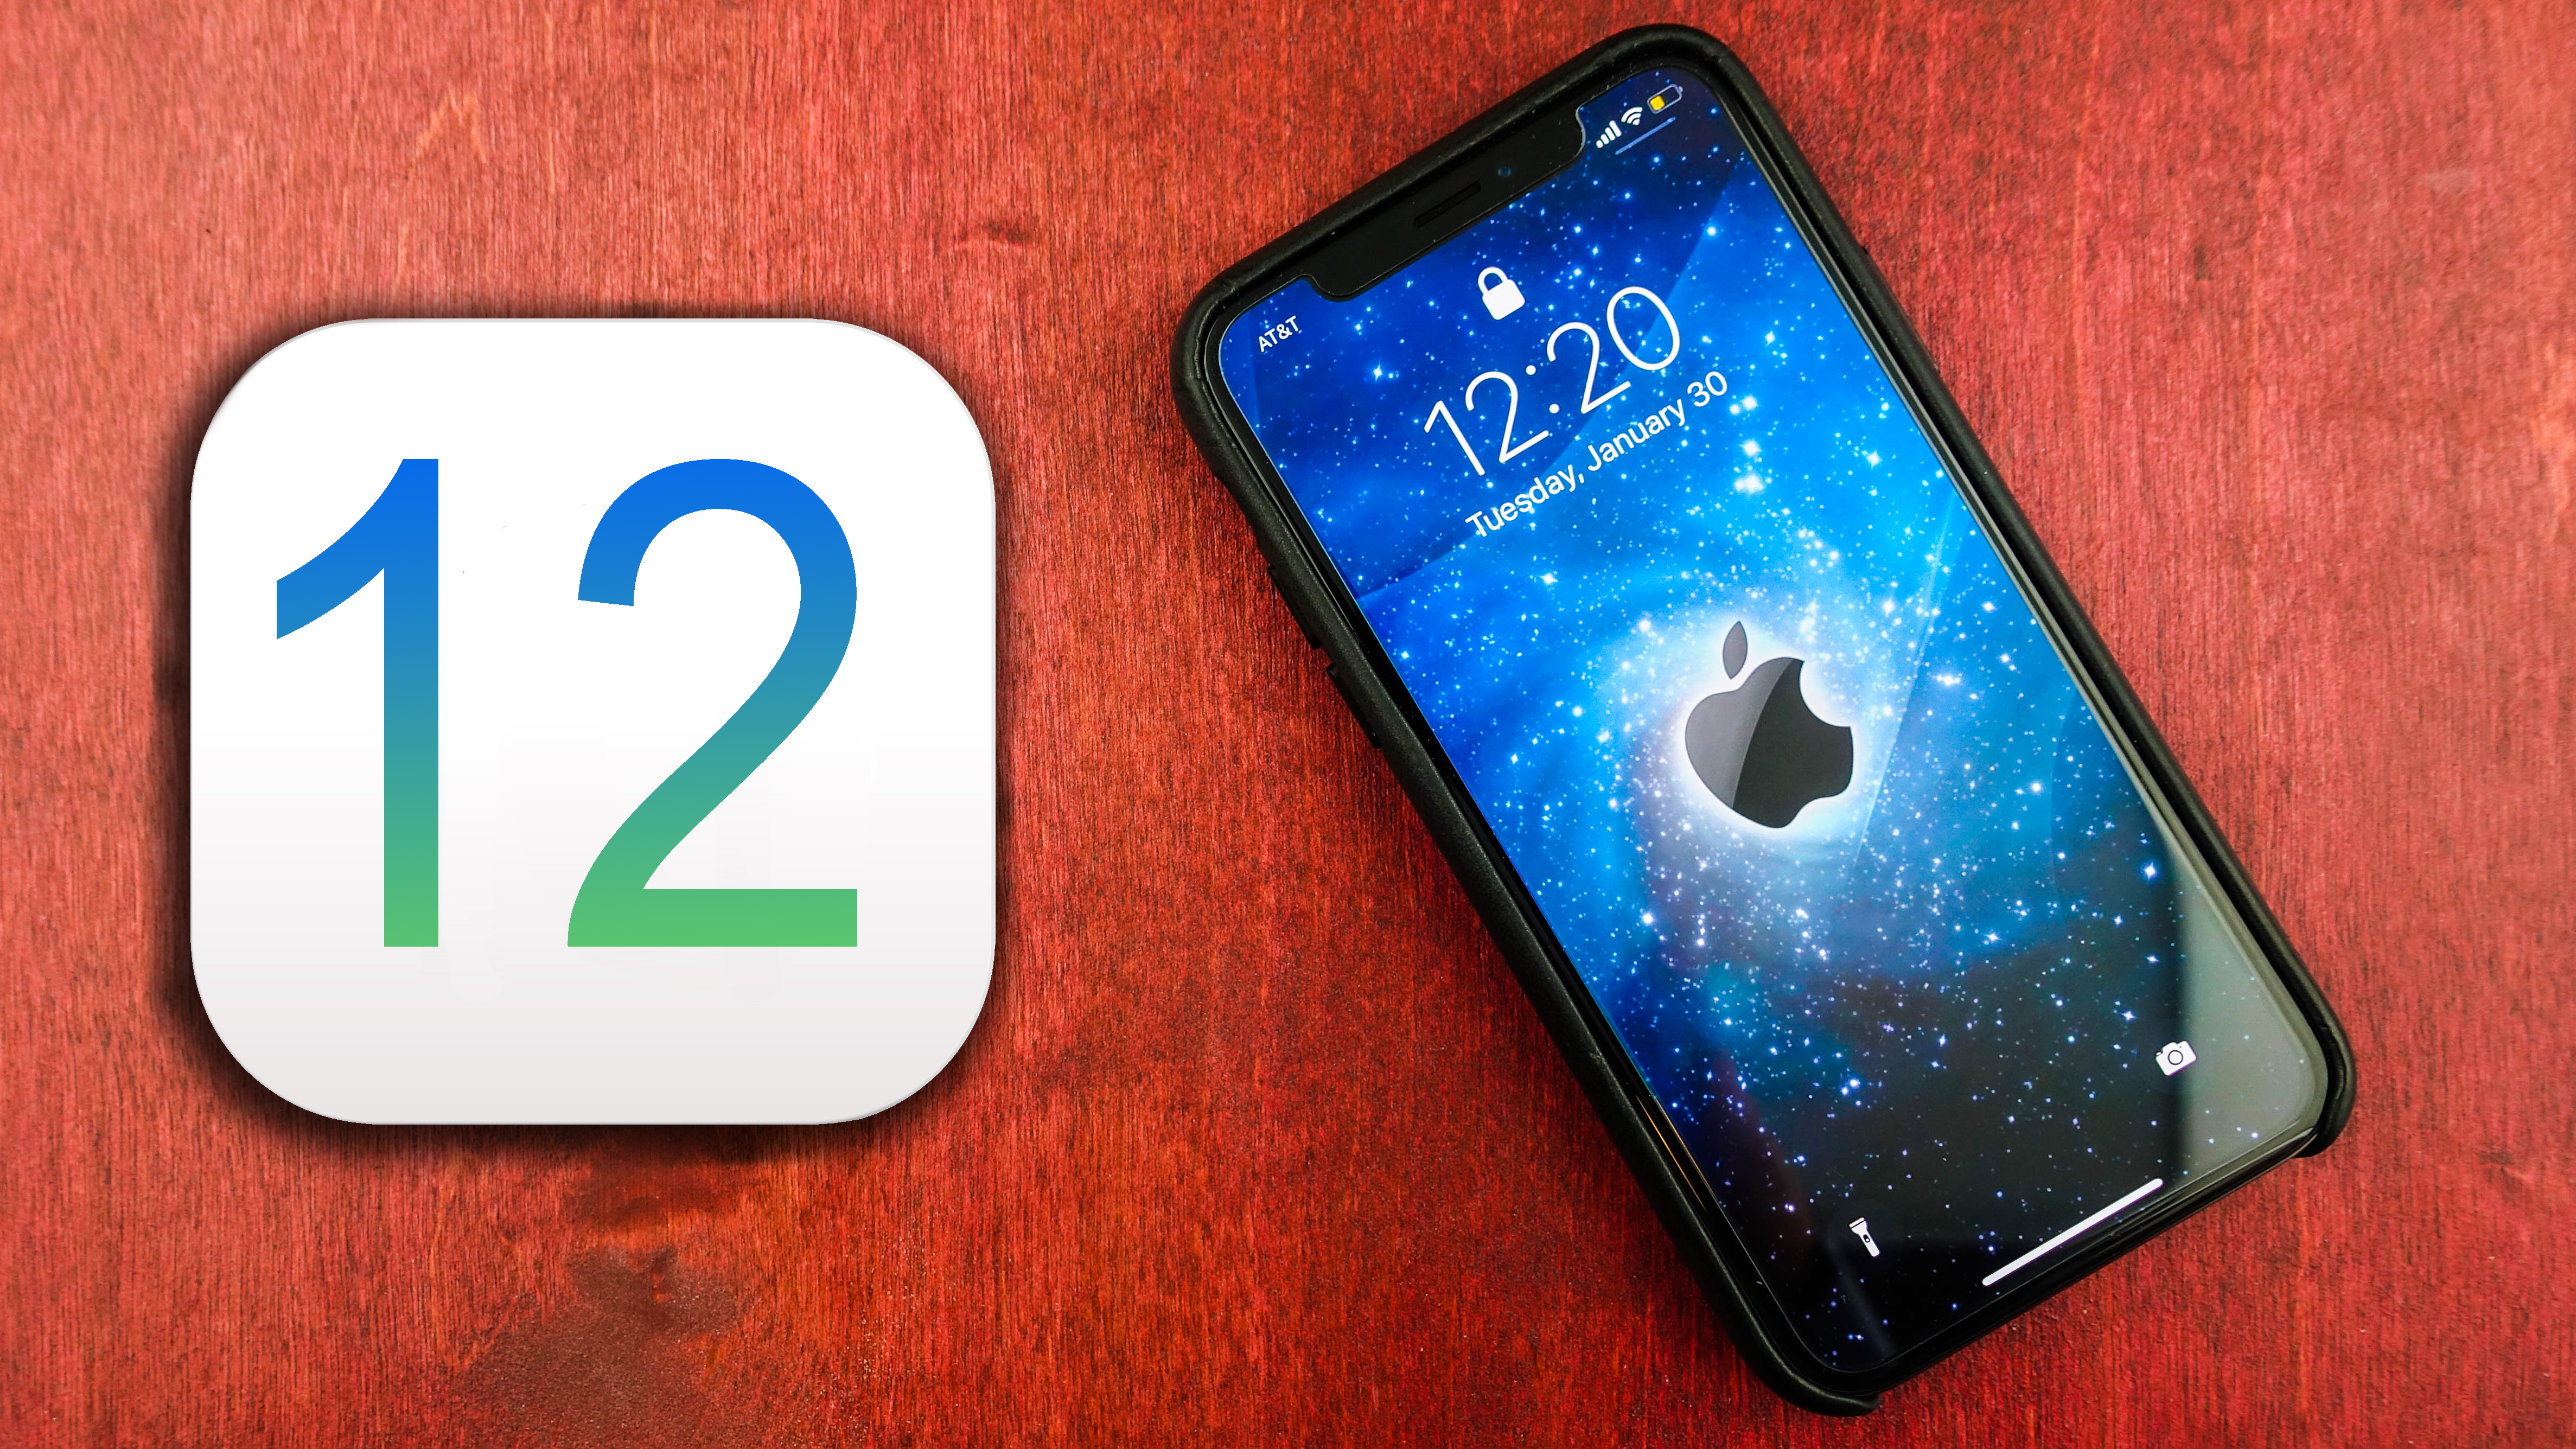 ابل تكشف رسمياً عن iOS 12 مع التركيز على الأداء والواقع المعزز